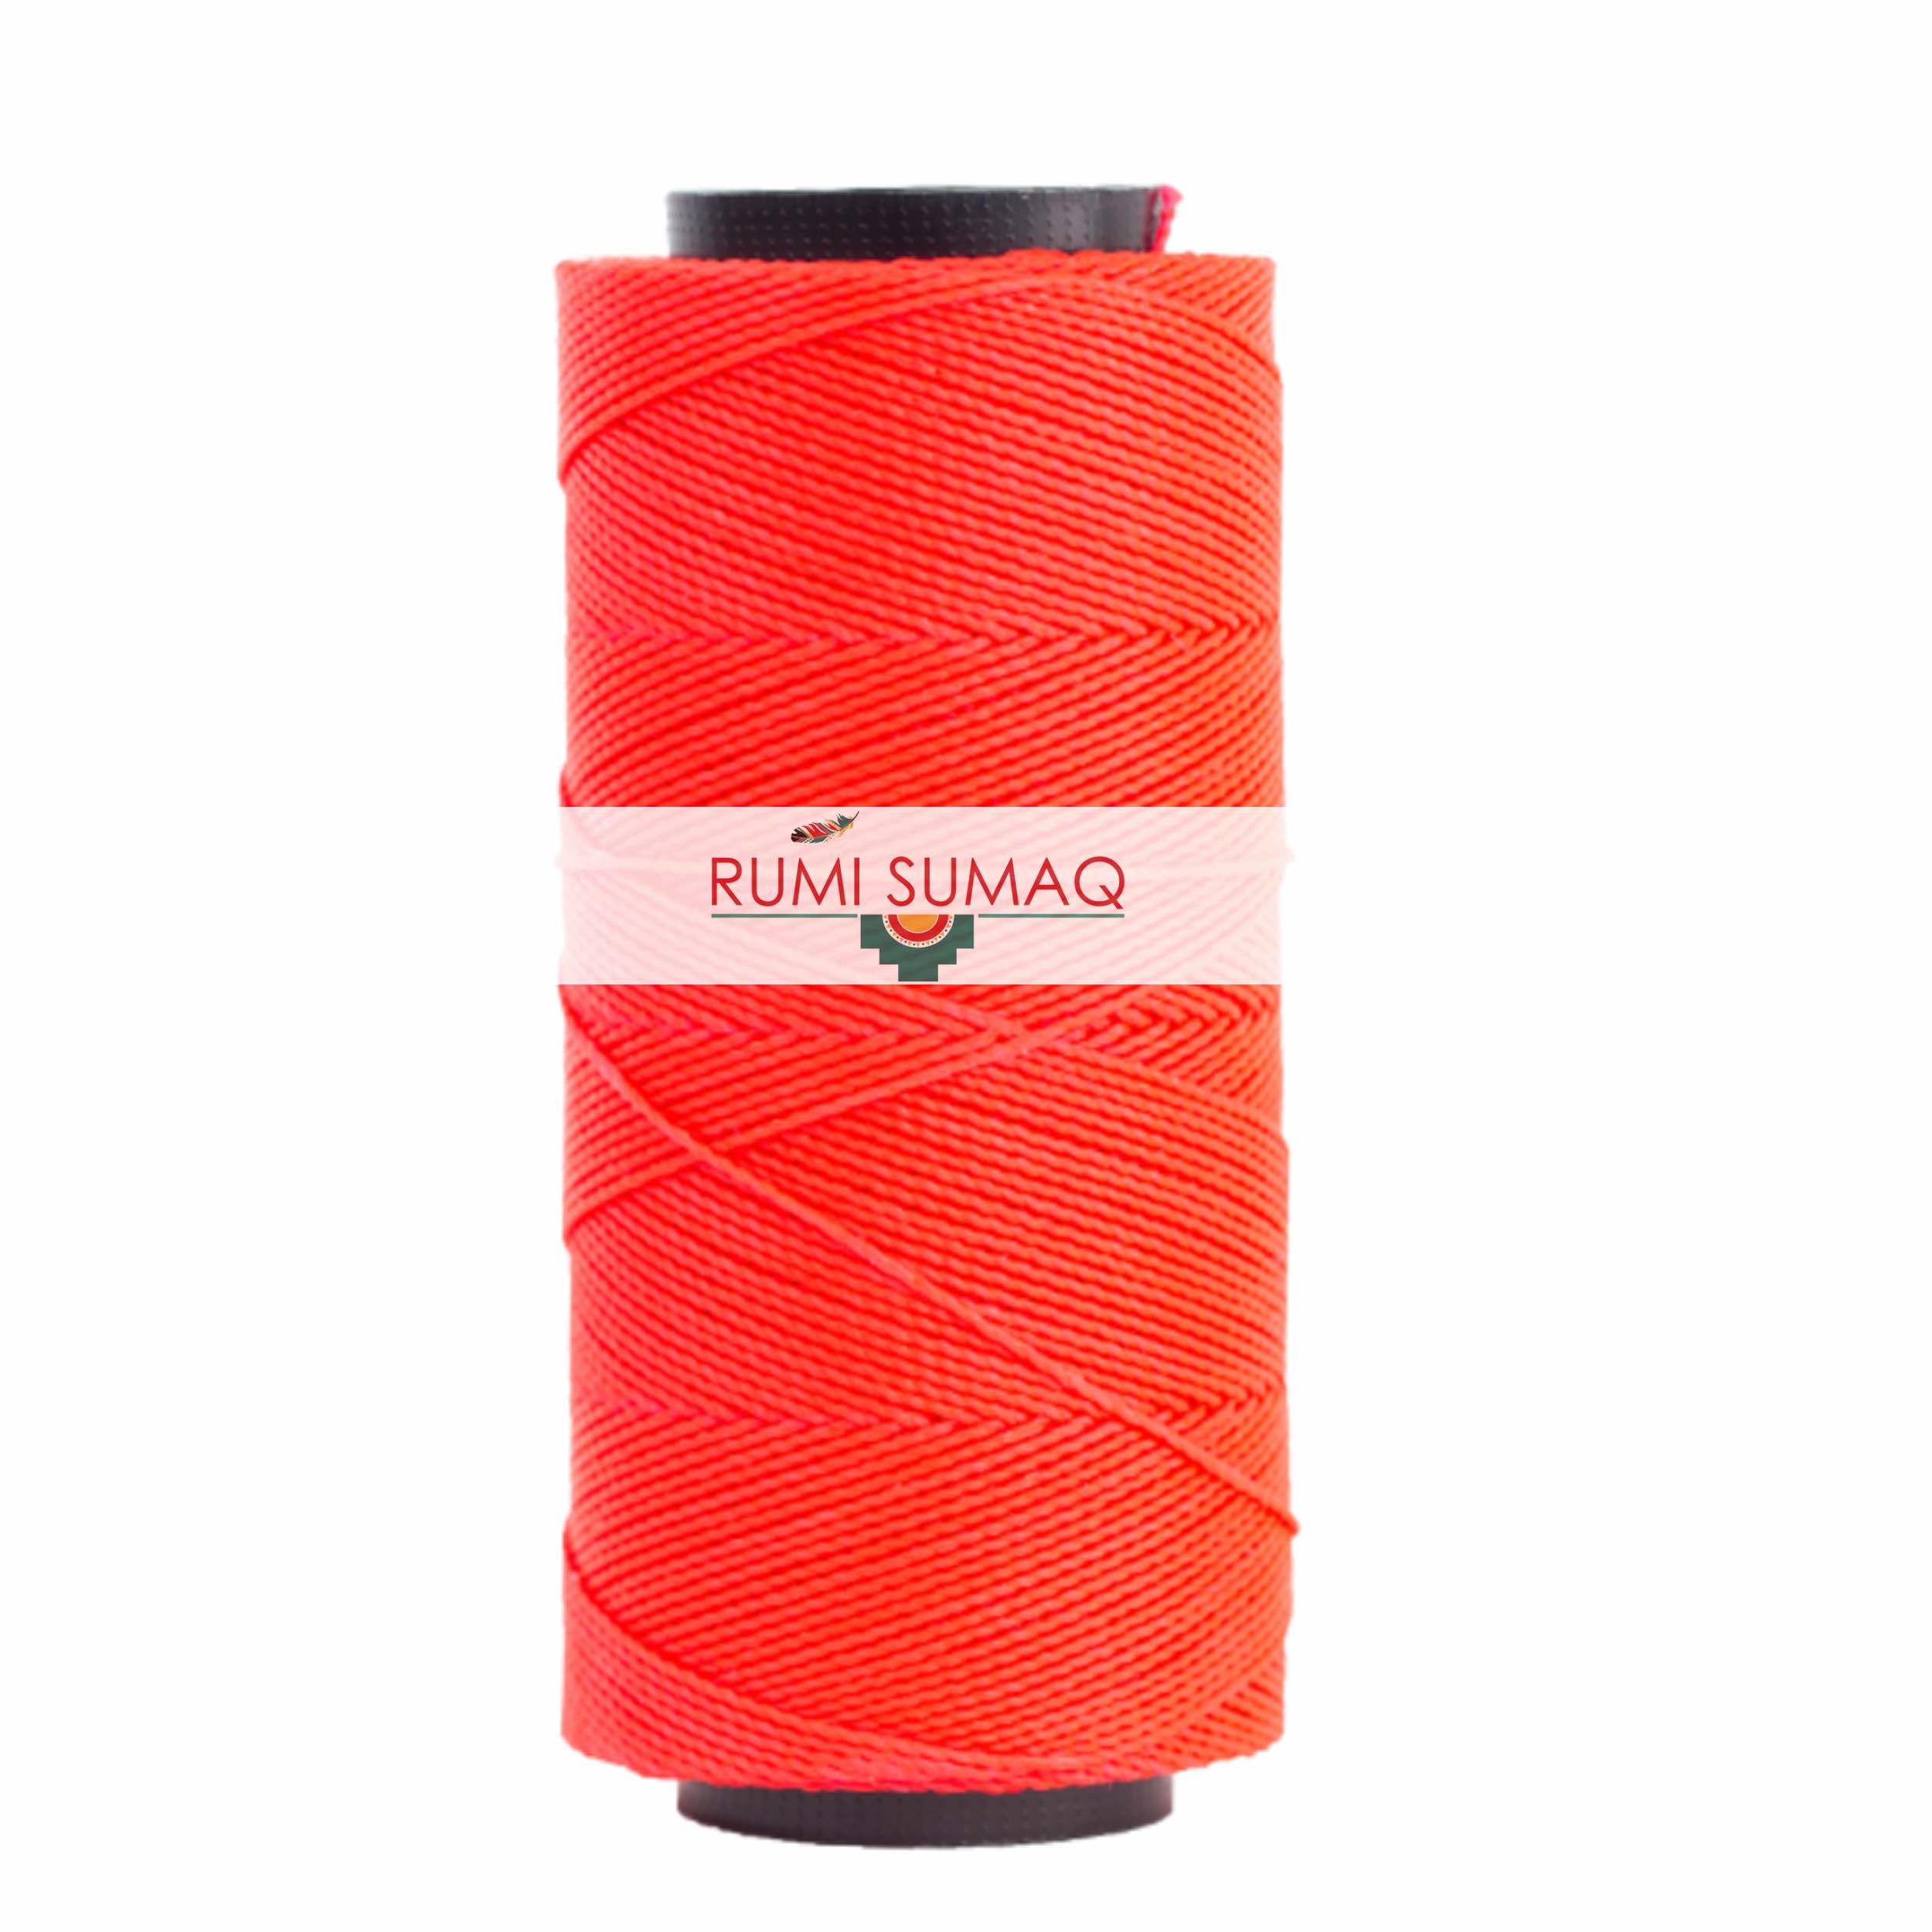 Settanyl 09-327 Hot Coral Waxed Polyester Cord 1mm Waxed Thread | RUMI SUMAQ Setta Encerada